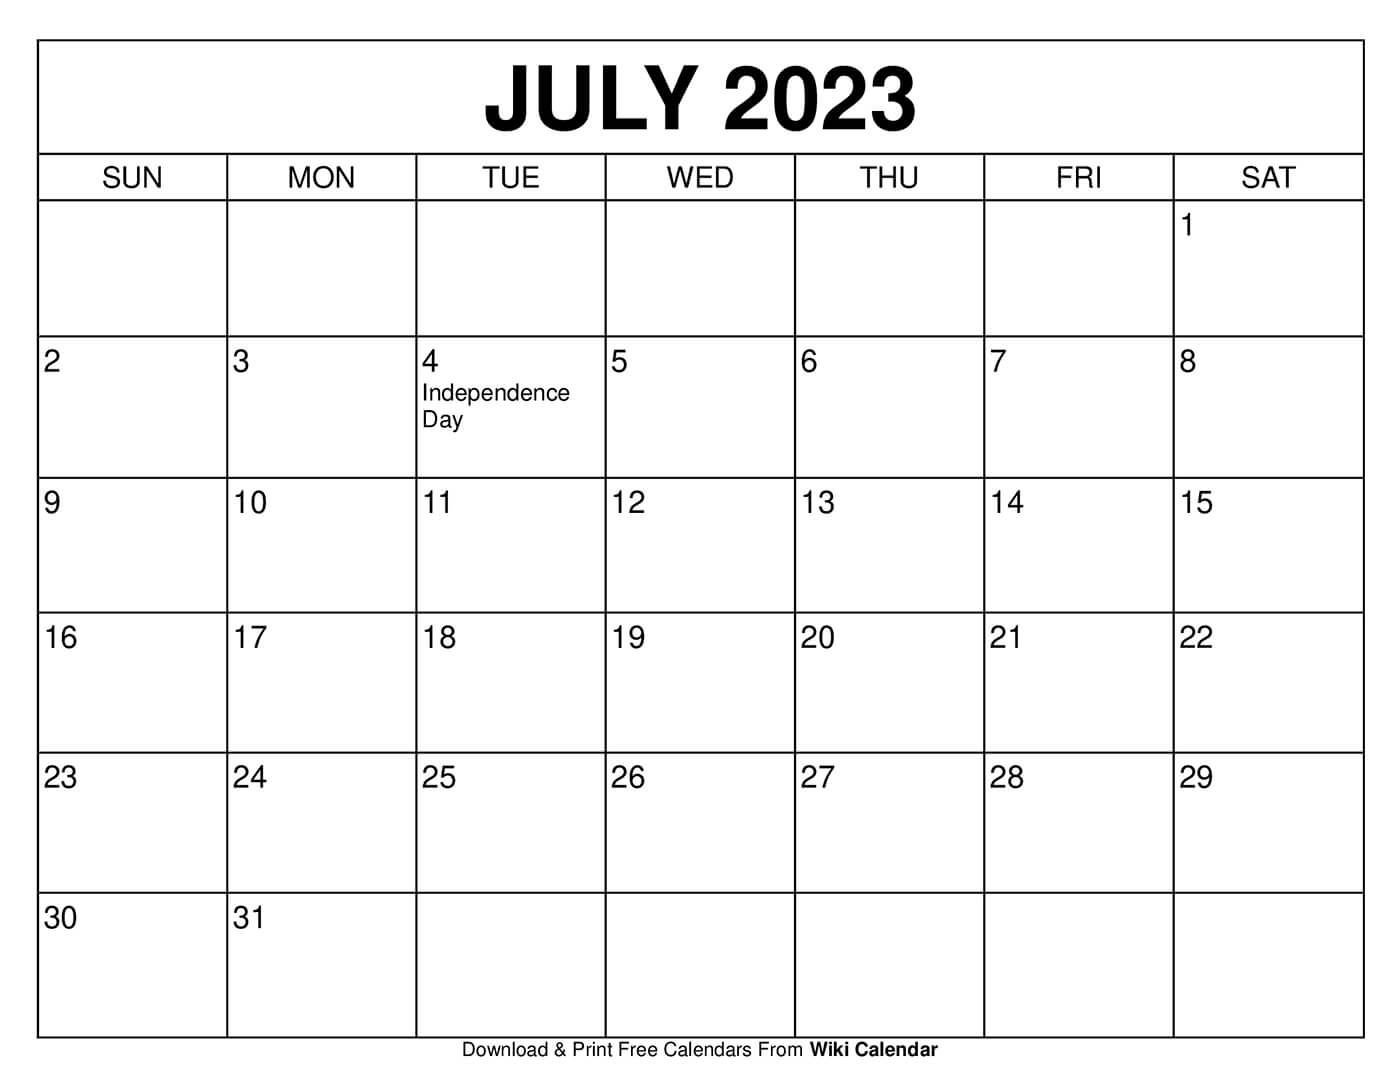 https://www.wiki-calendar.com/wp-content/uploads/2022/09/July-2023-Calendar.jpg